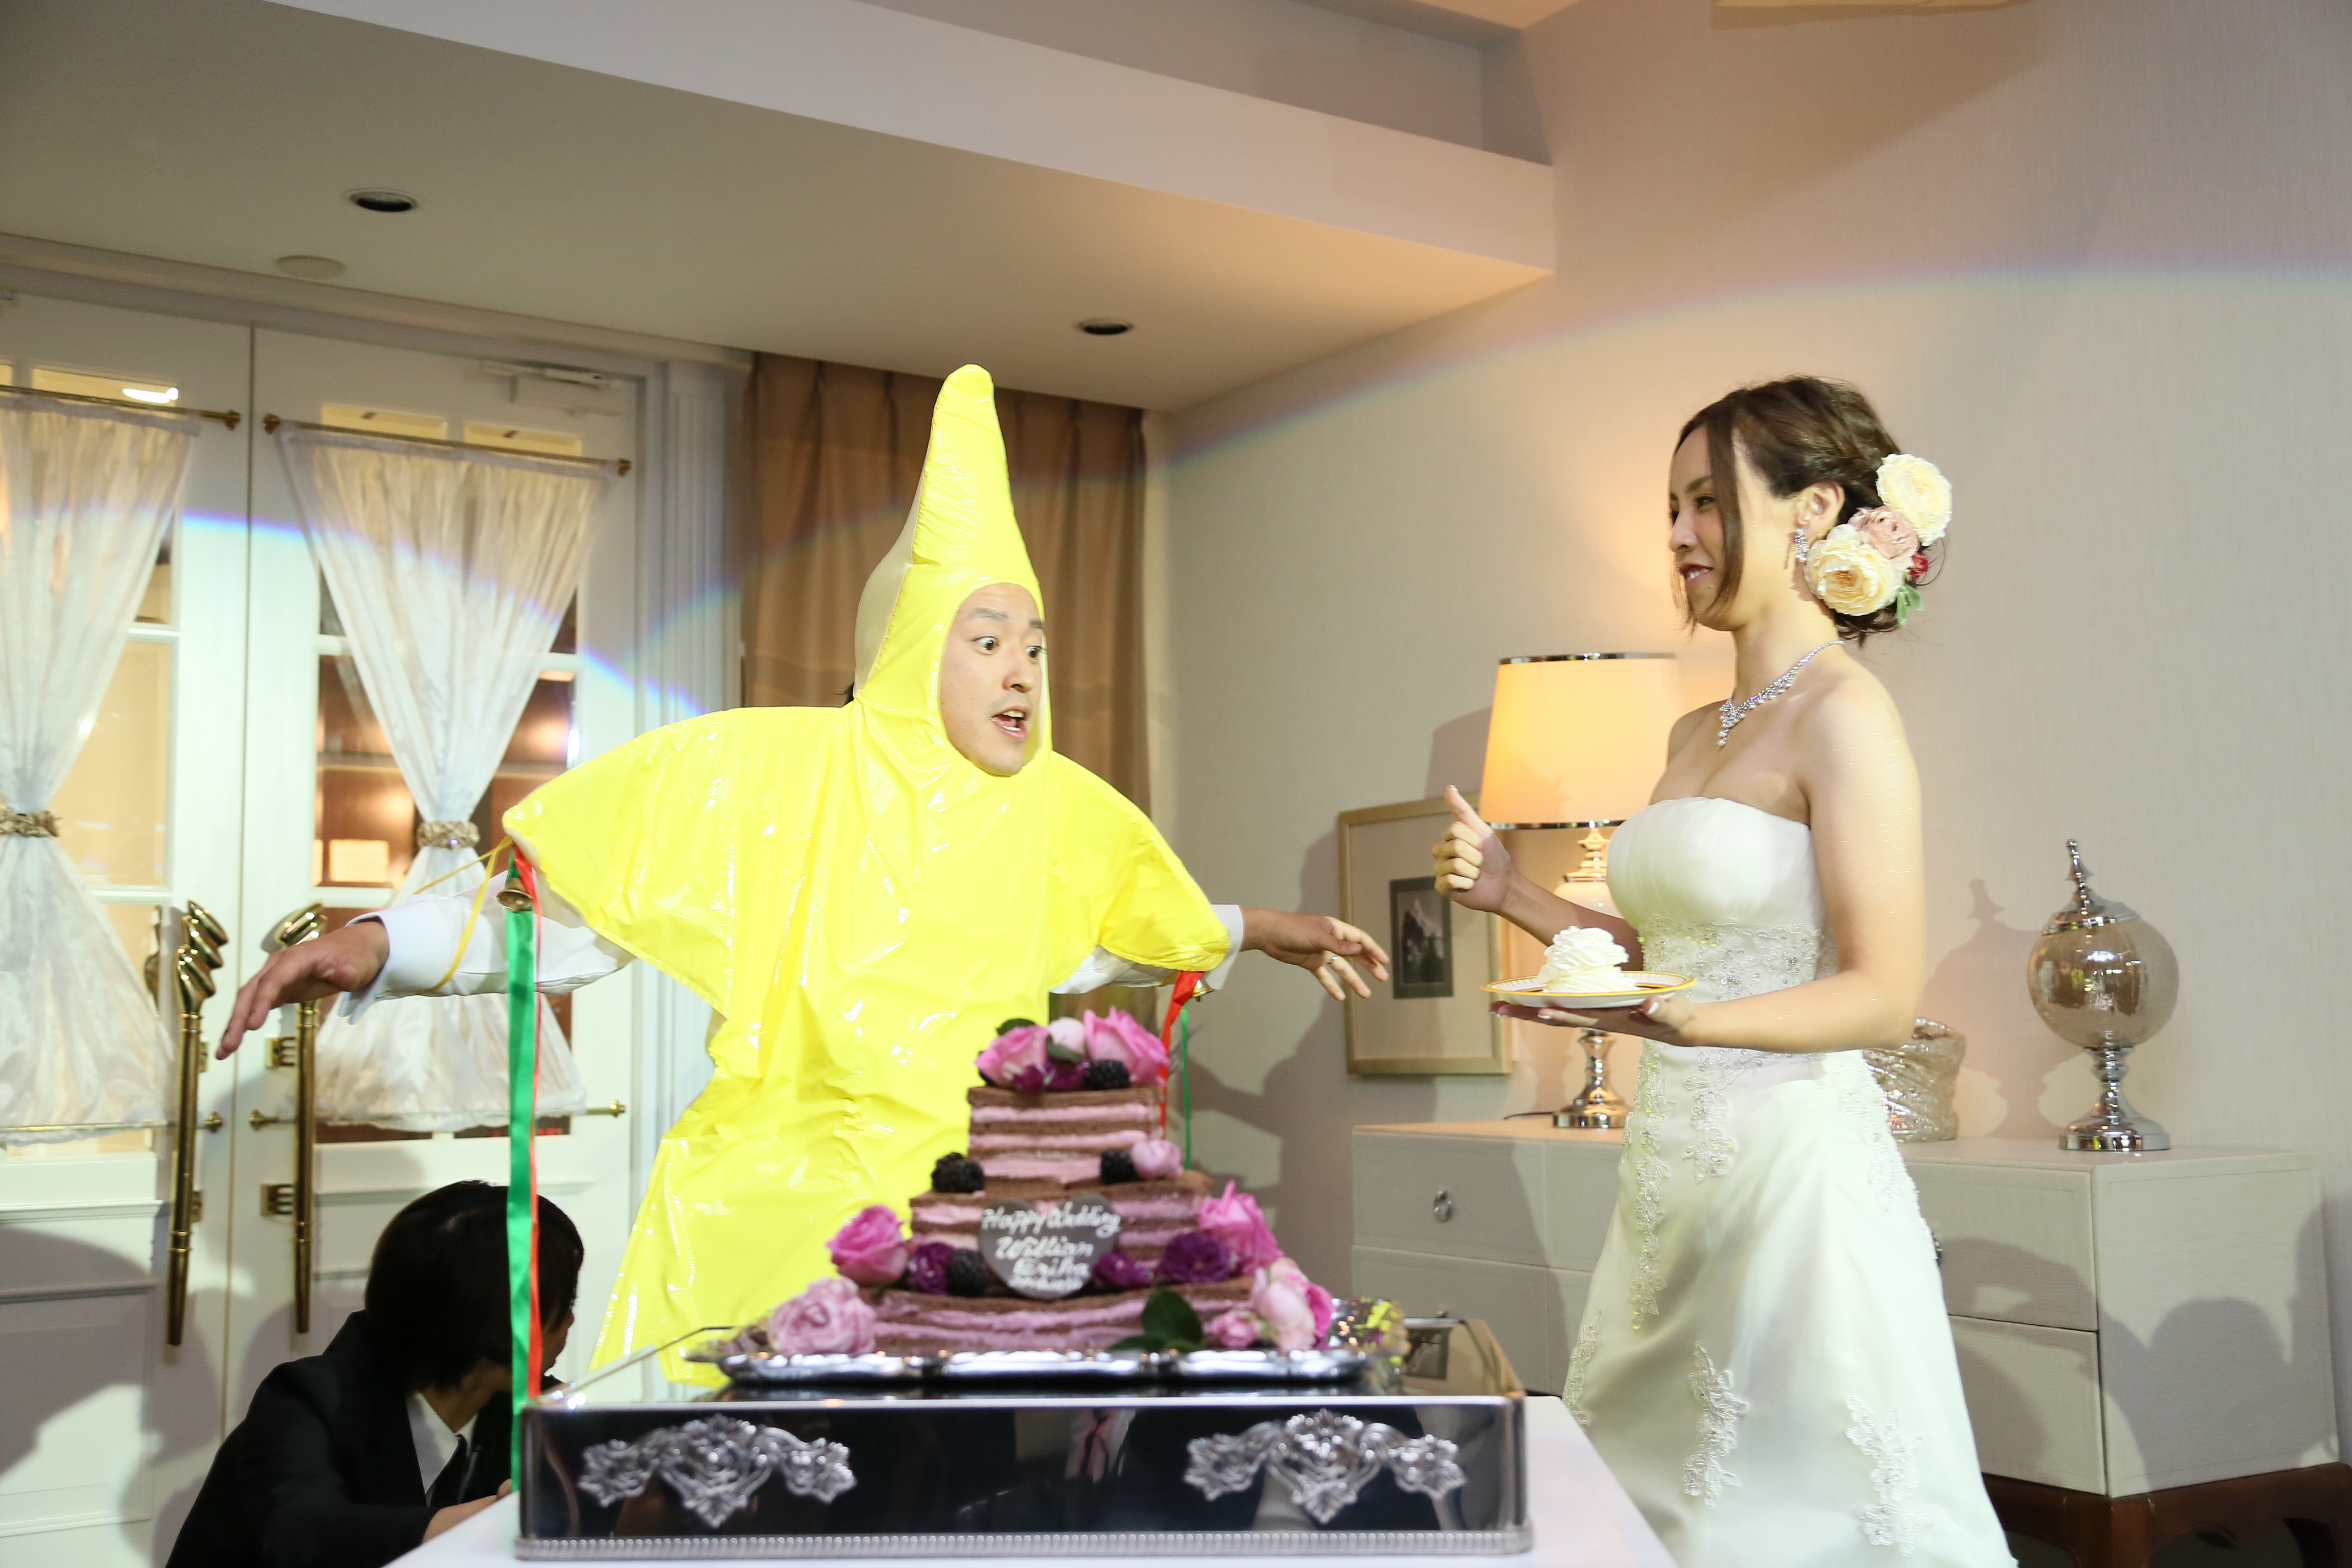 星の王子様とプリンセス マリエール太田 群馬県太田市の結婚式場 披露宴会場 挙式